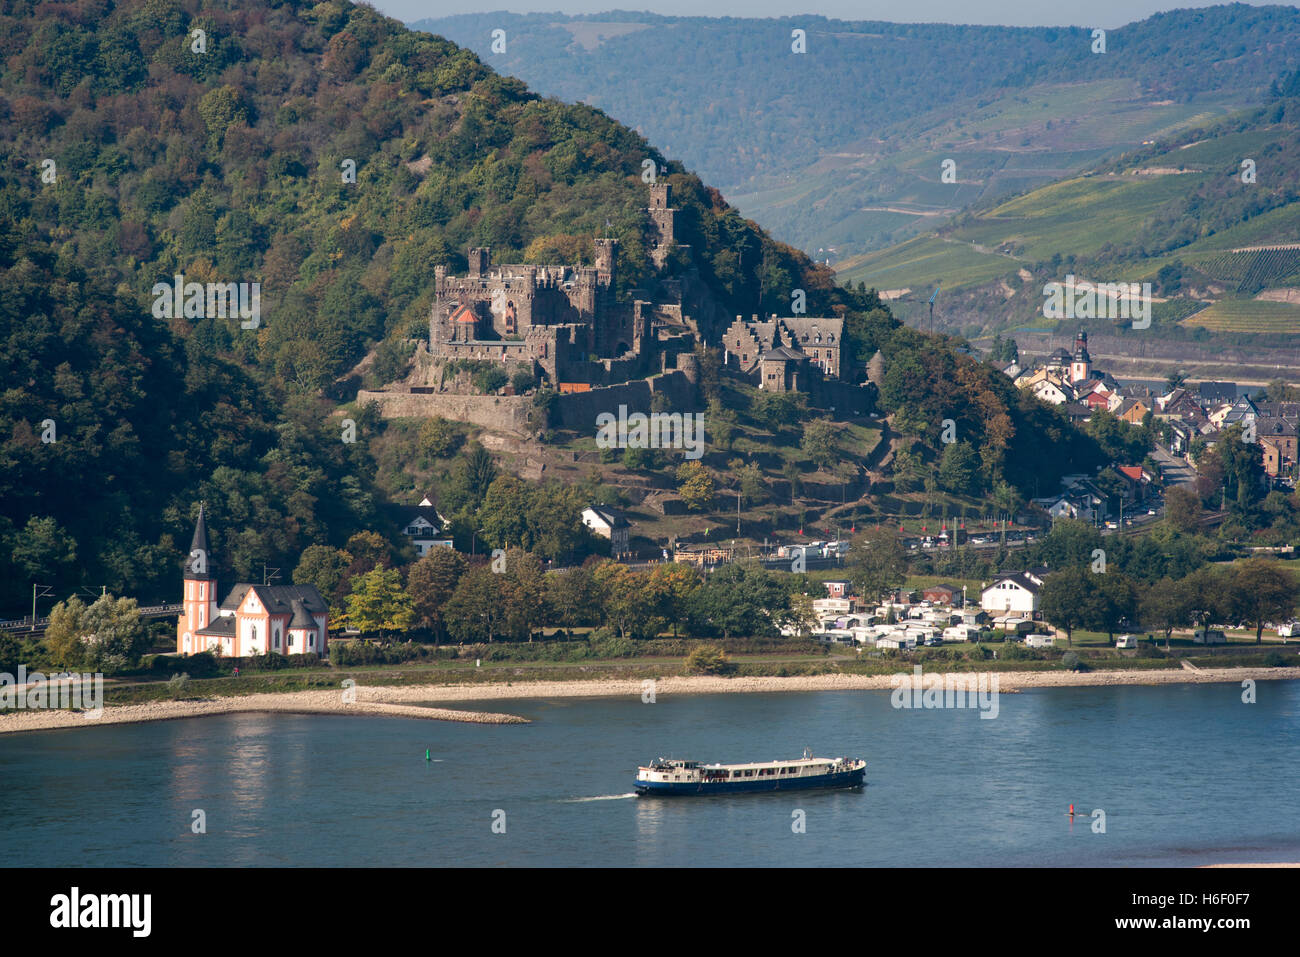 Burg Reichenstein castle, Rhine Valley autumn Stock Photo